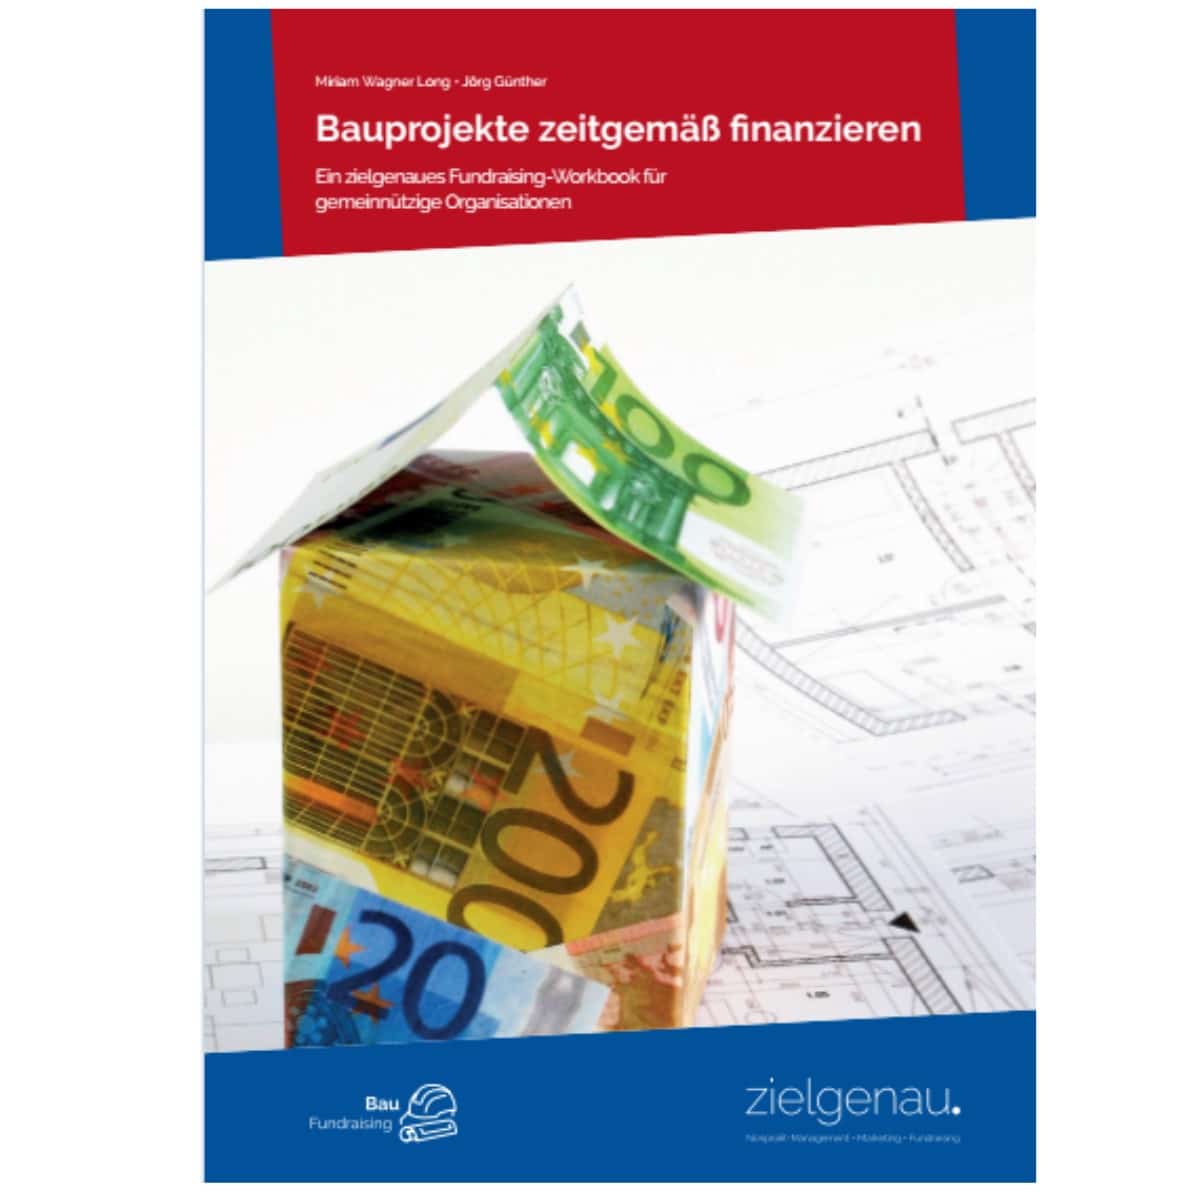 Handbuch Baufundraising - Neuauflage ab 12. Juli 2023 erhähtlich